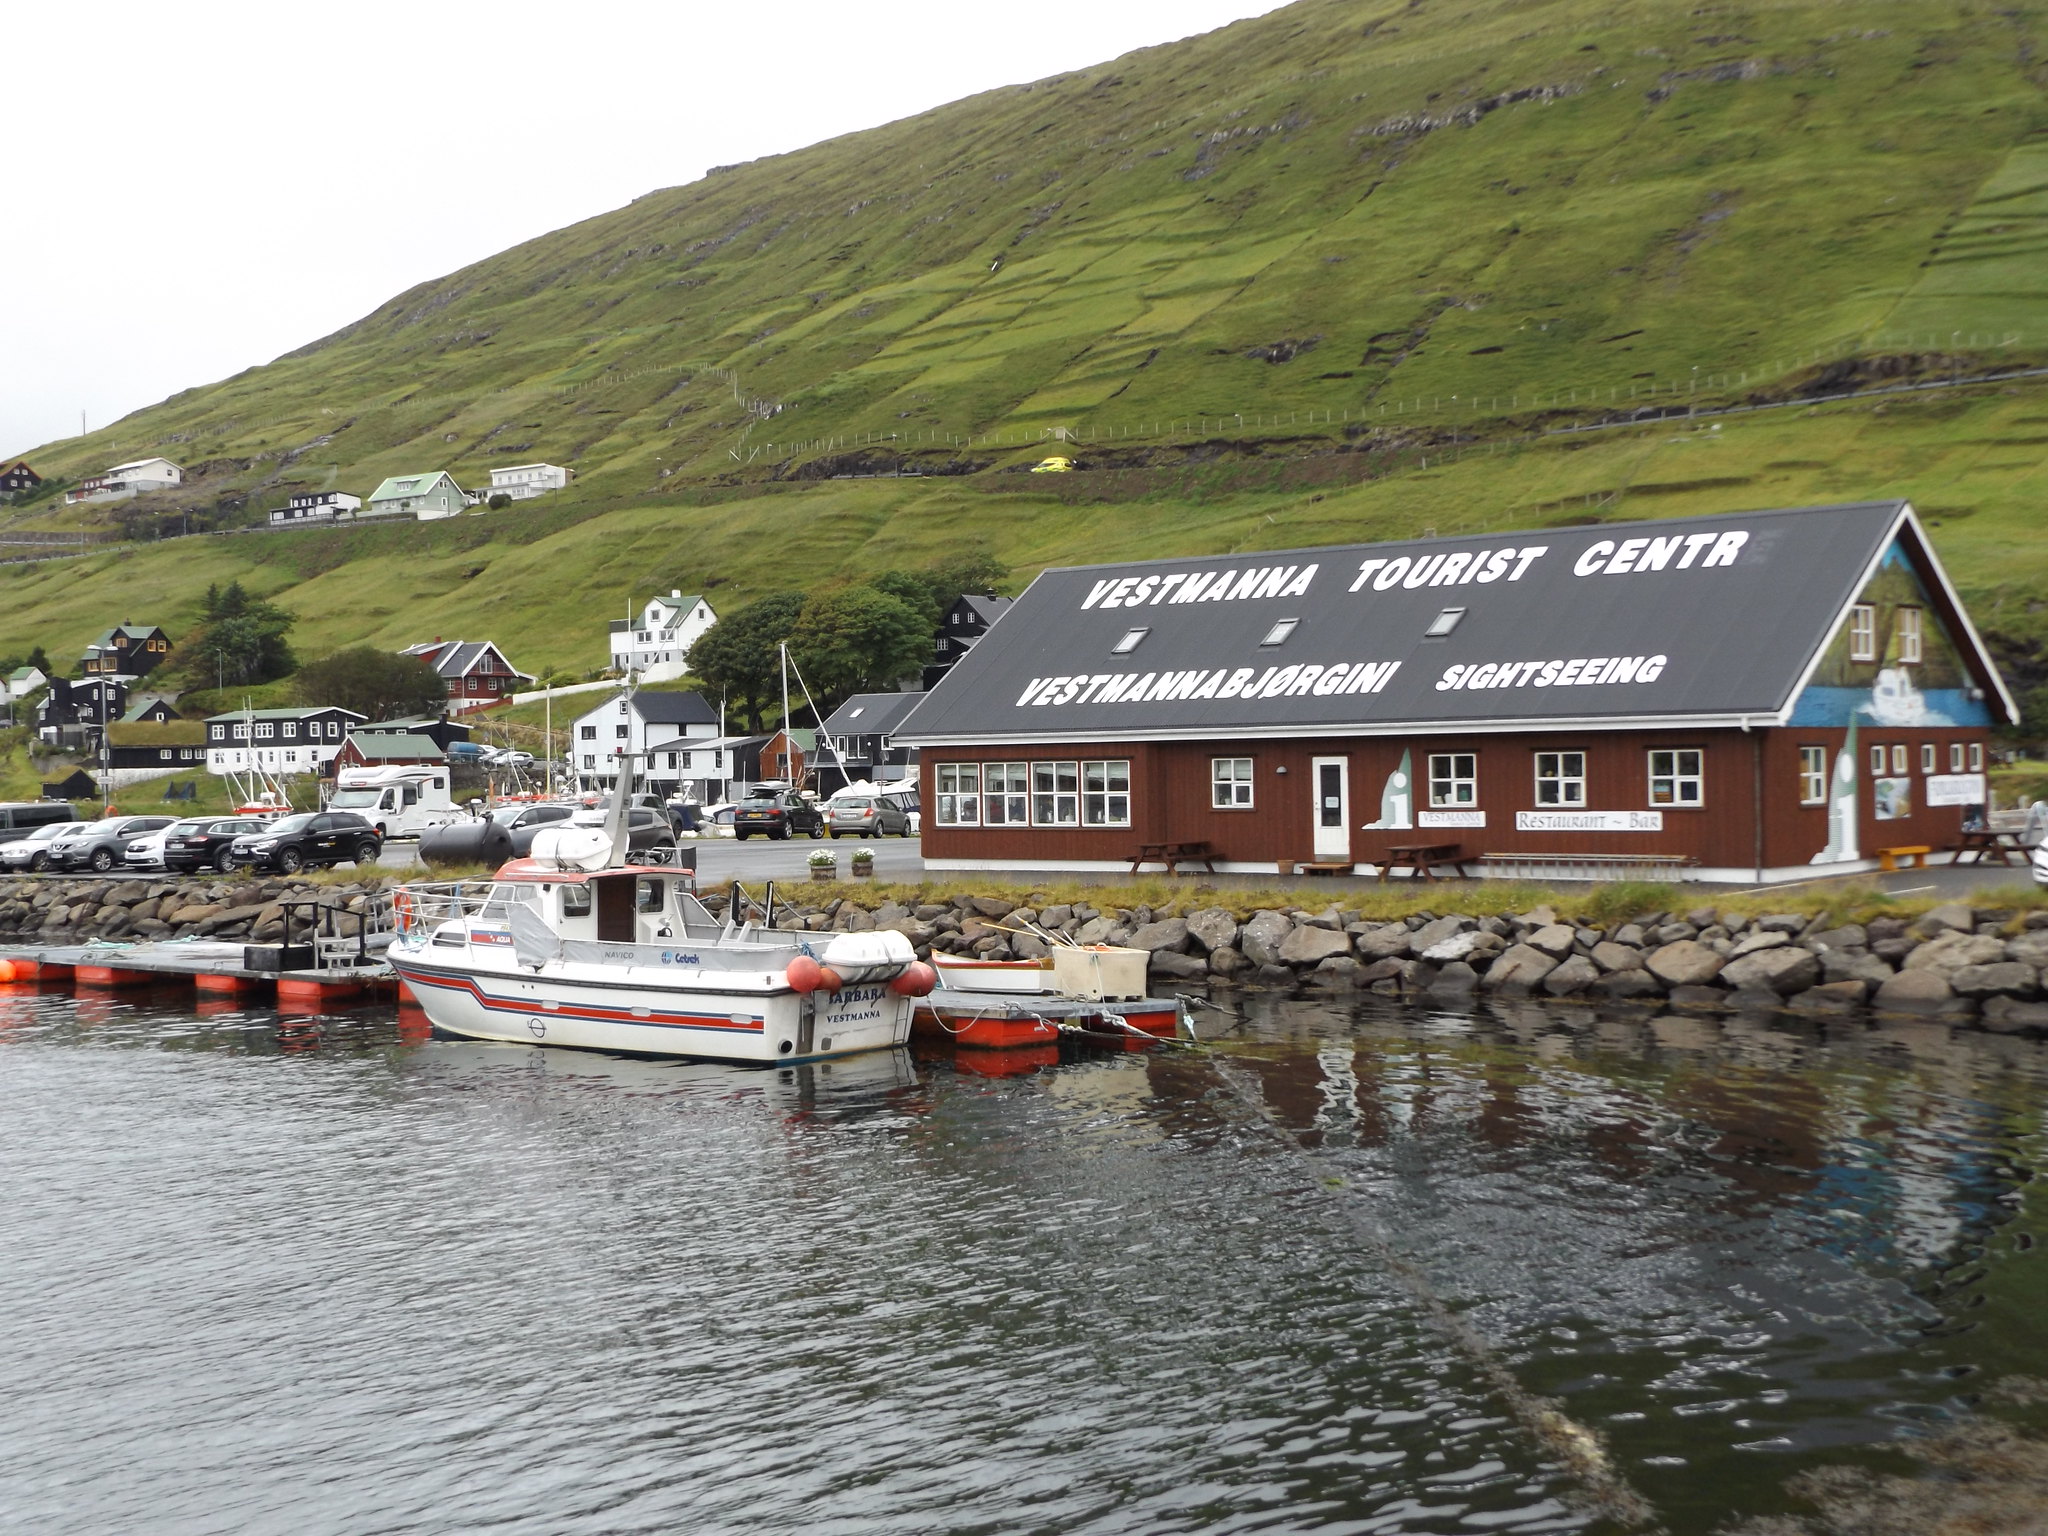 Vestmanna Tourist Centre, Streymoy, Faroe Islands, 17 July 2018